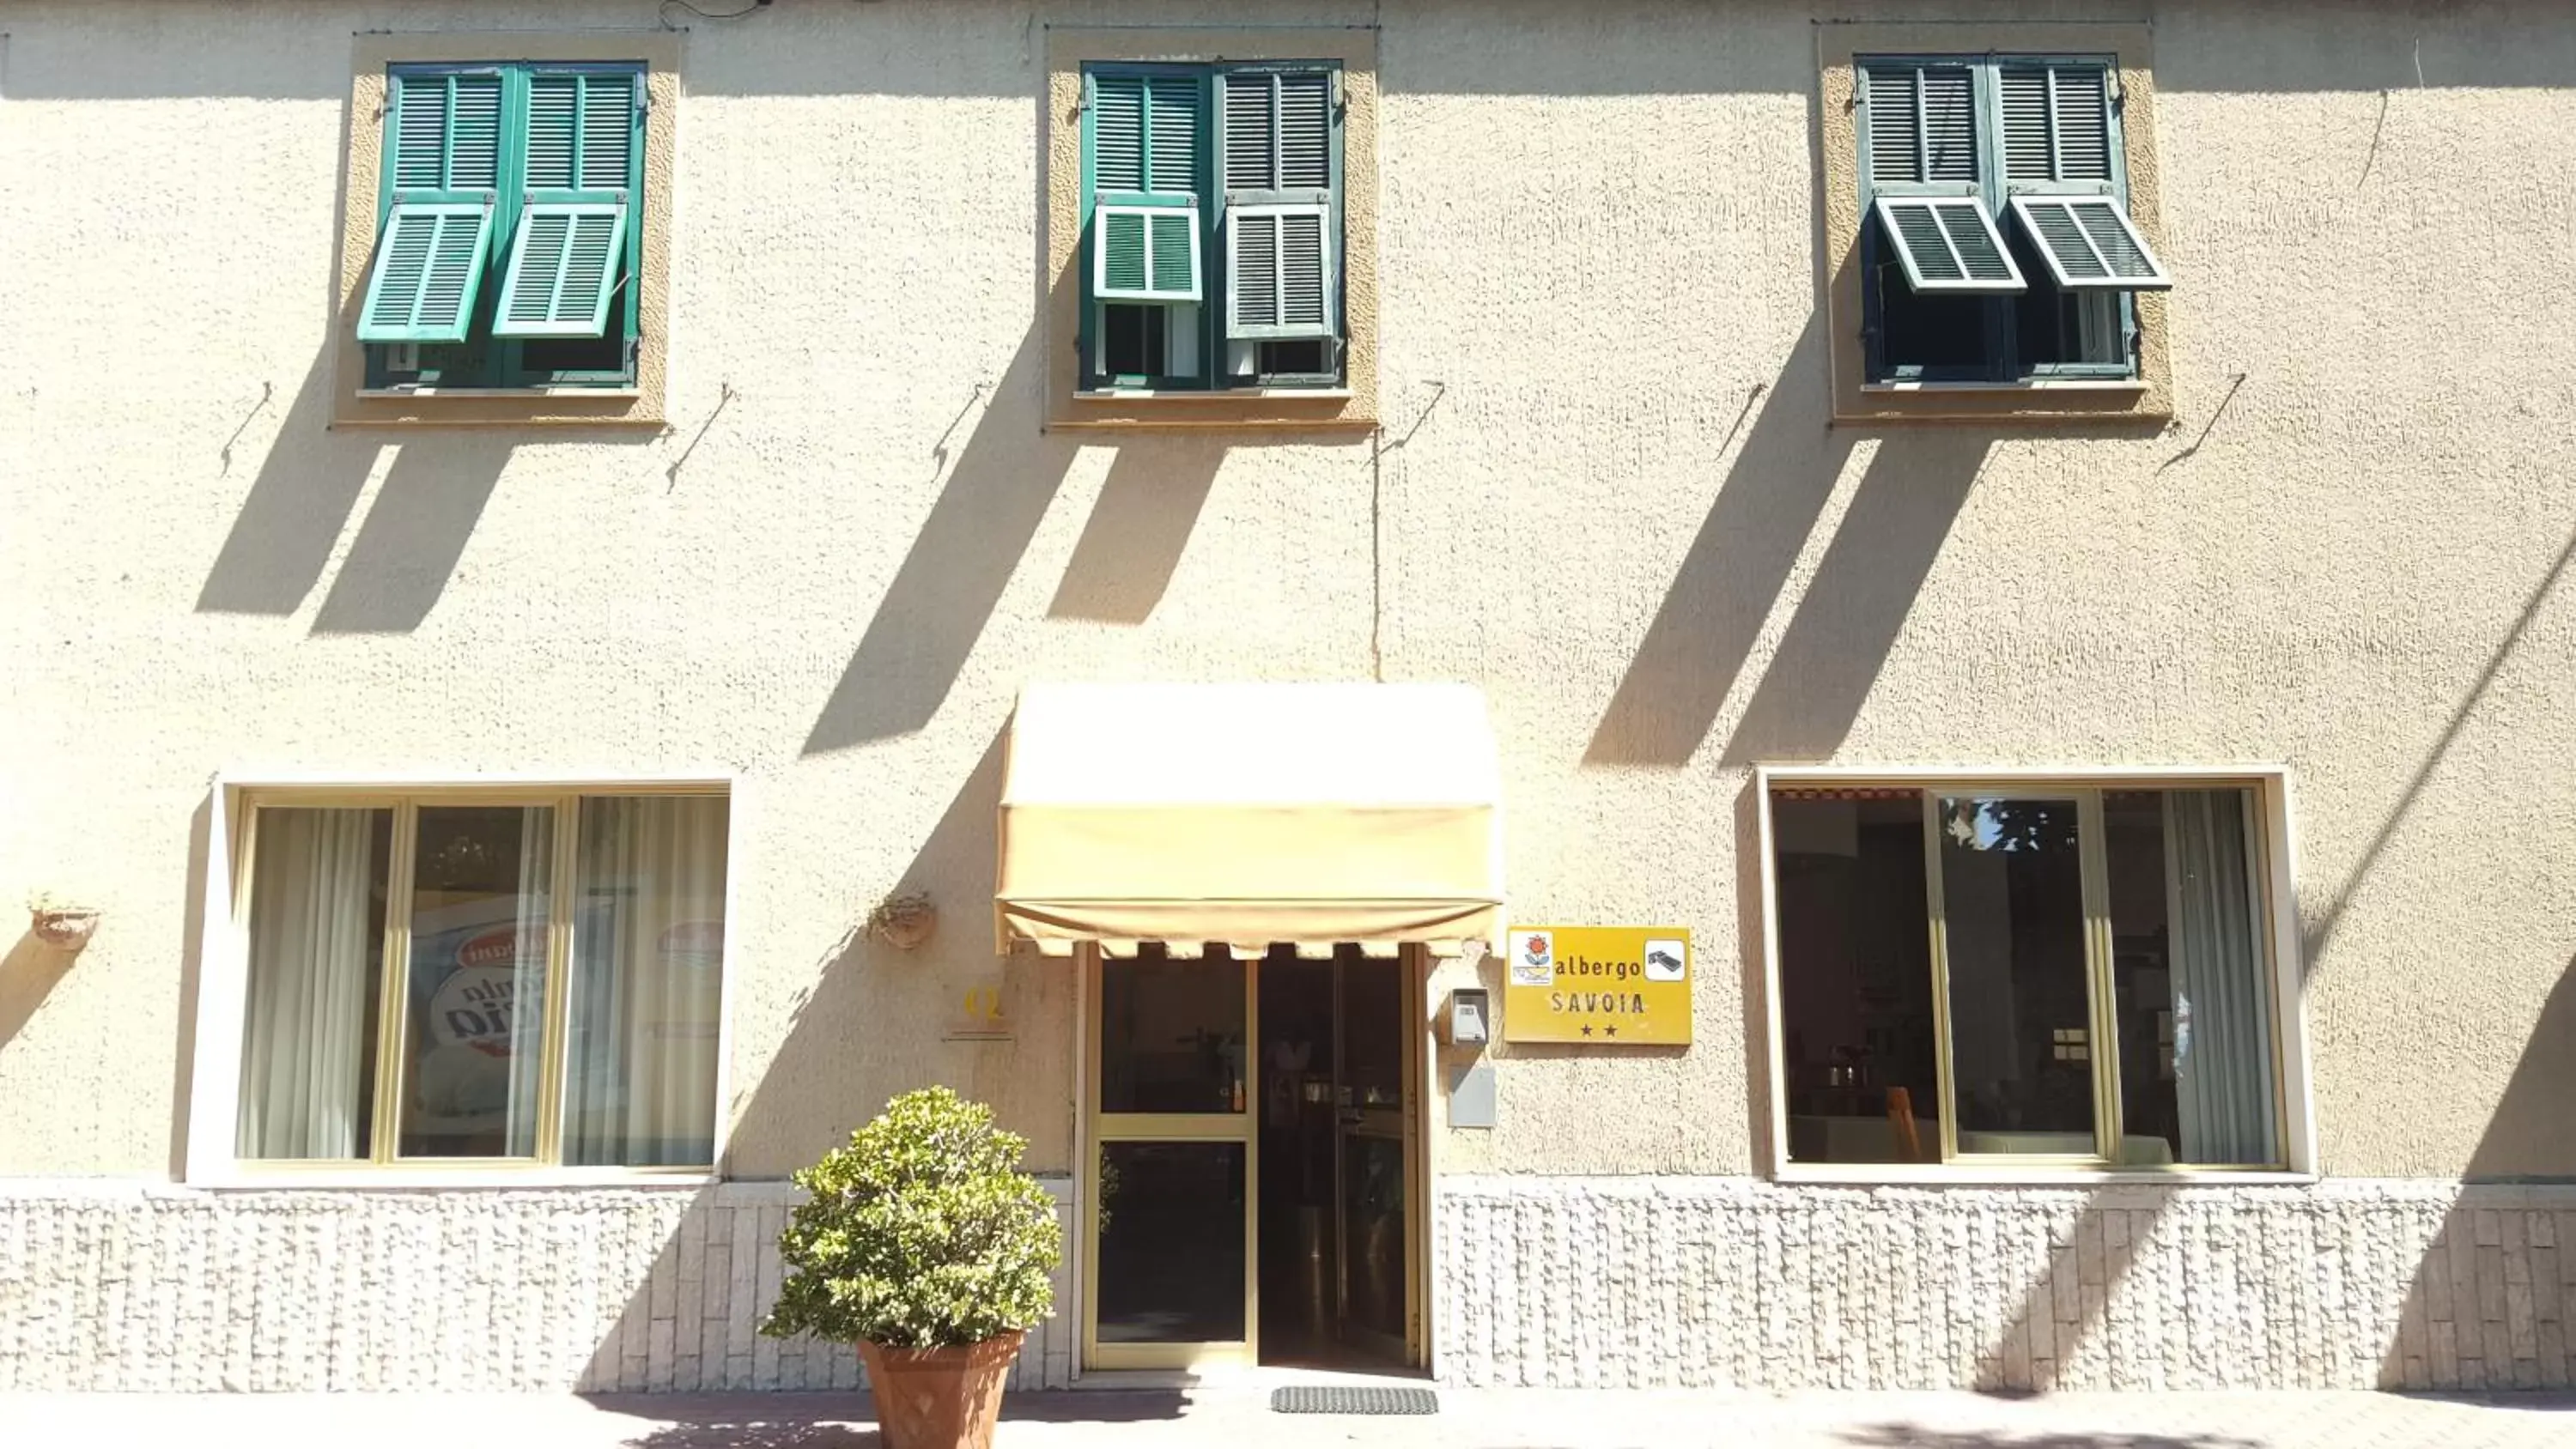 Property building, Facade/Entrance in Albergo Savoia